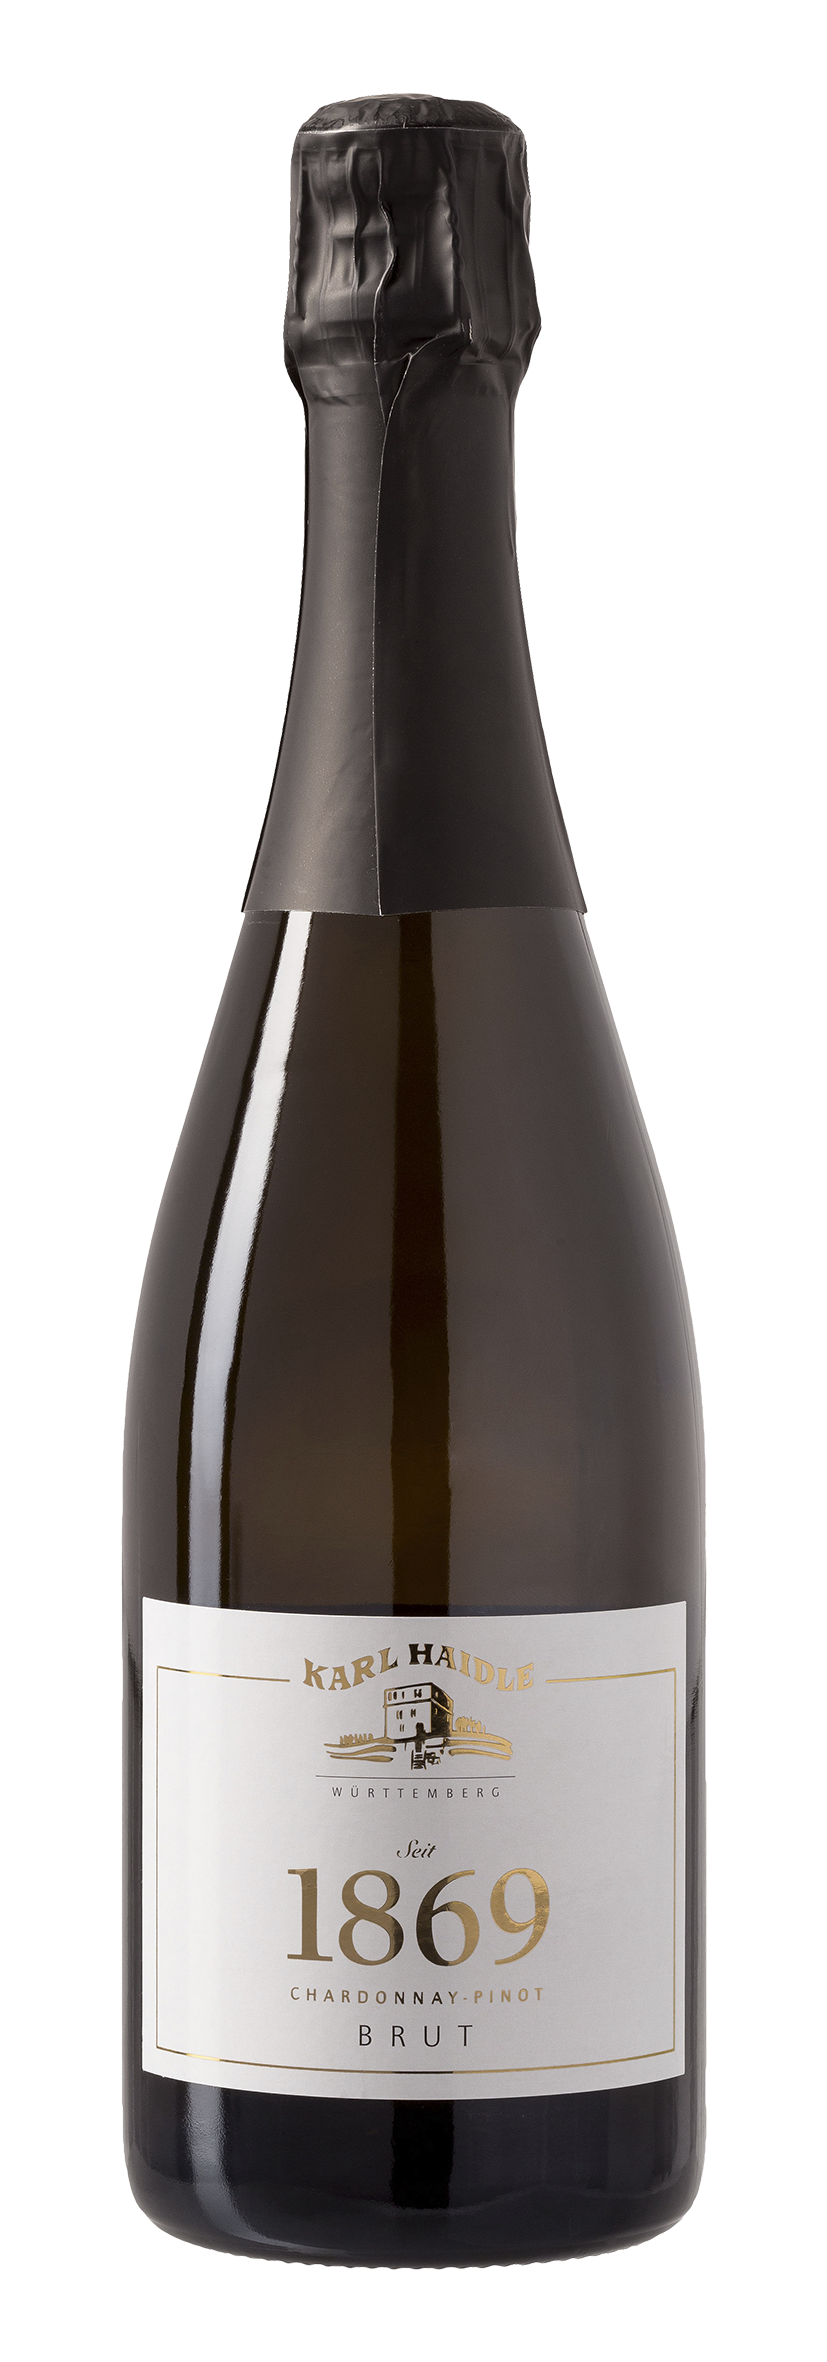 Chardonnay-Pinot 1869 Brut 2016